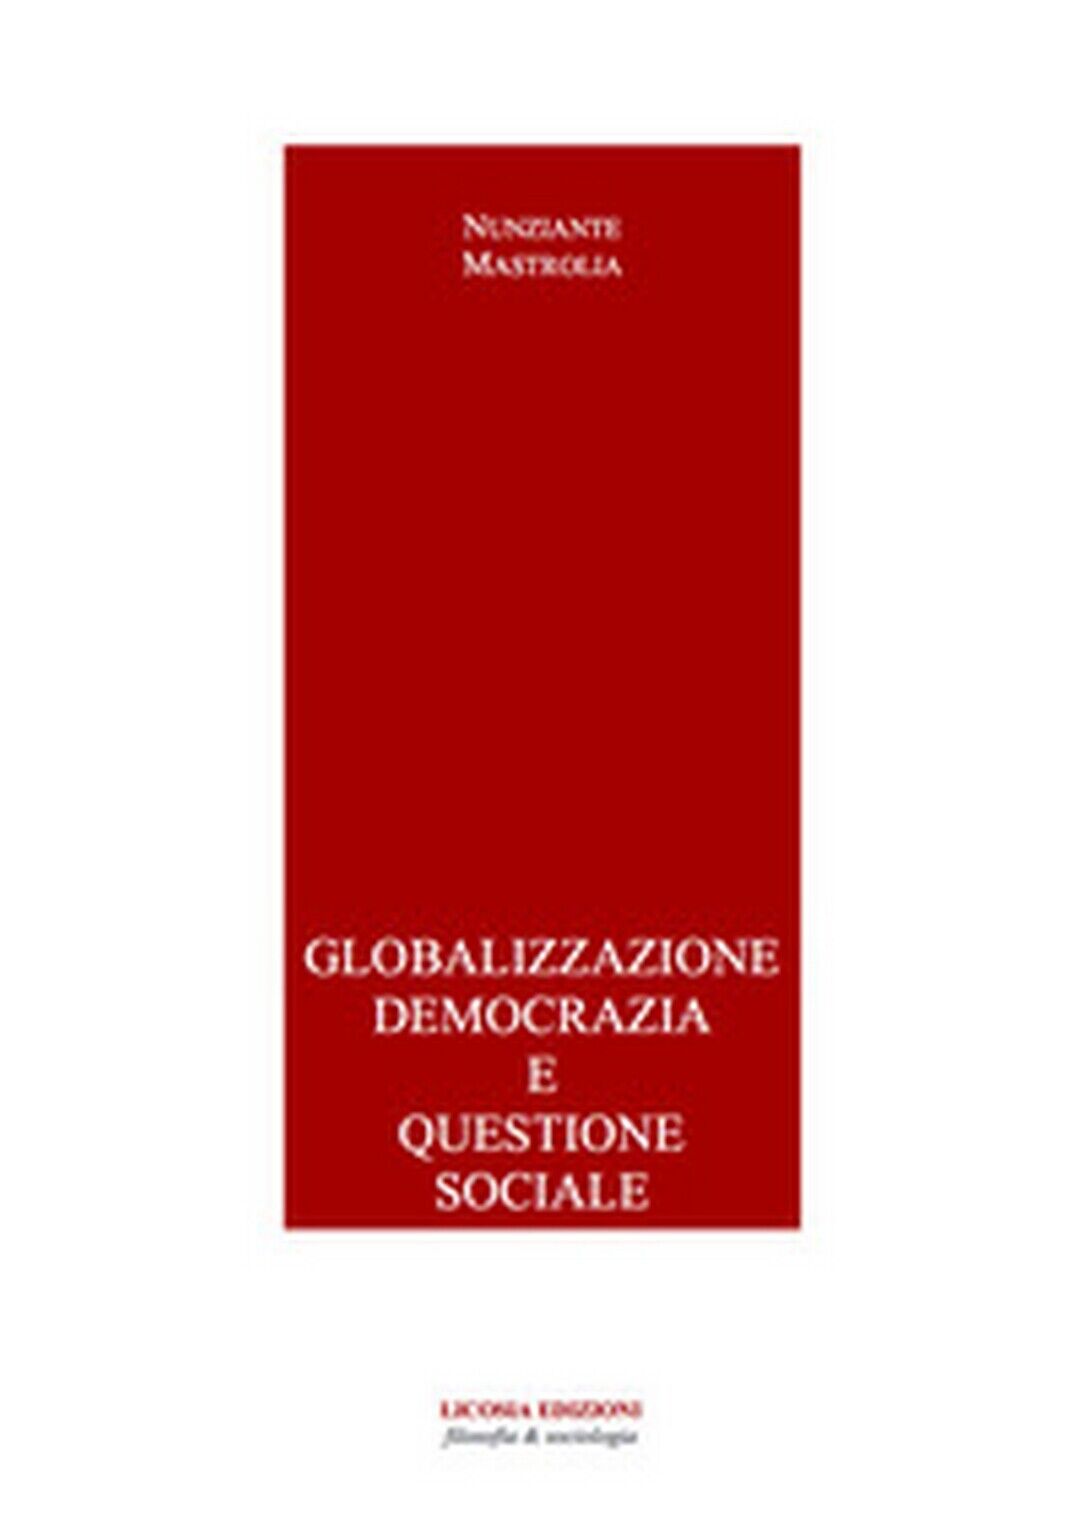 Globalizzazione democrazia e questione sociale di Nunziante Mastrolia (Licosia) libro usato